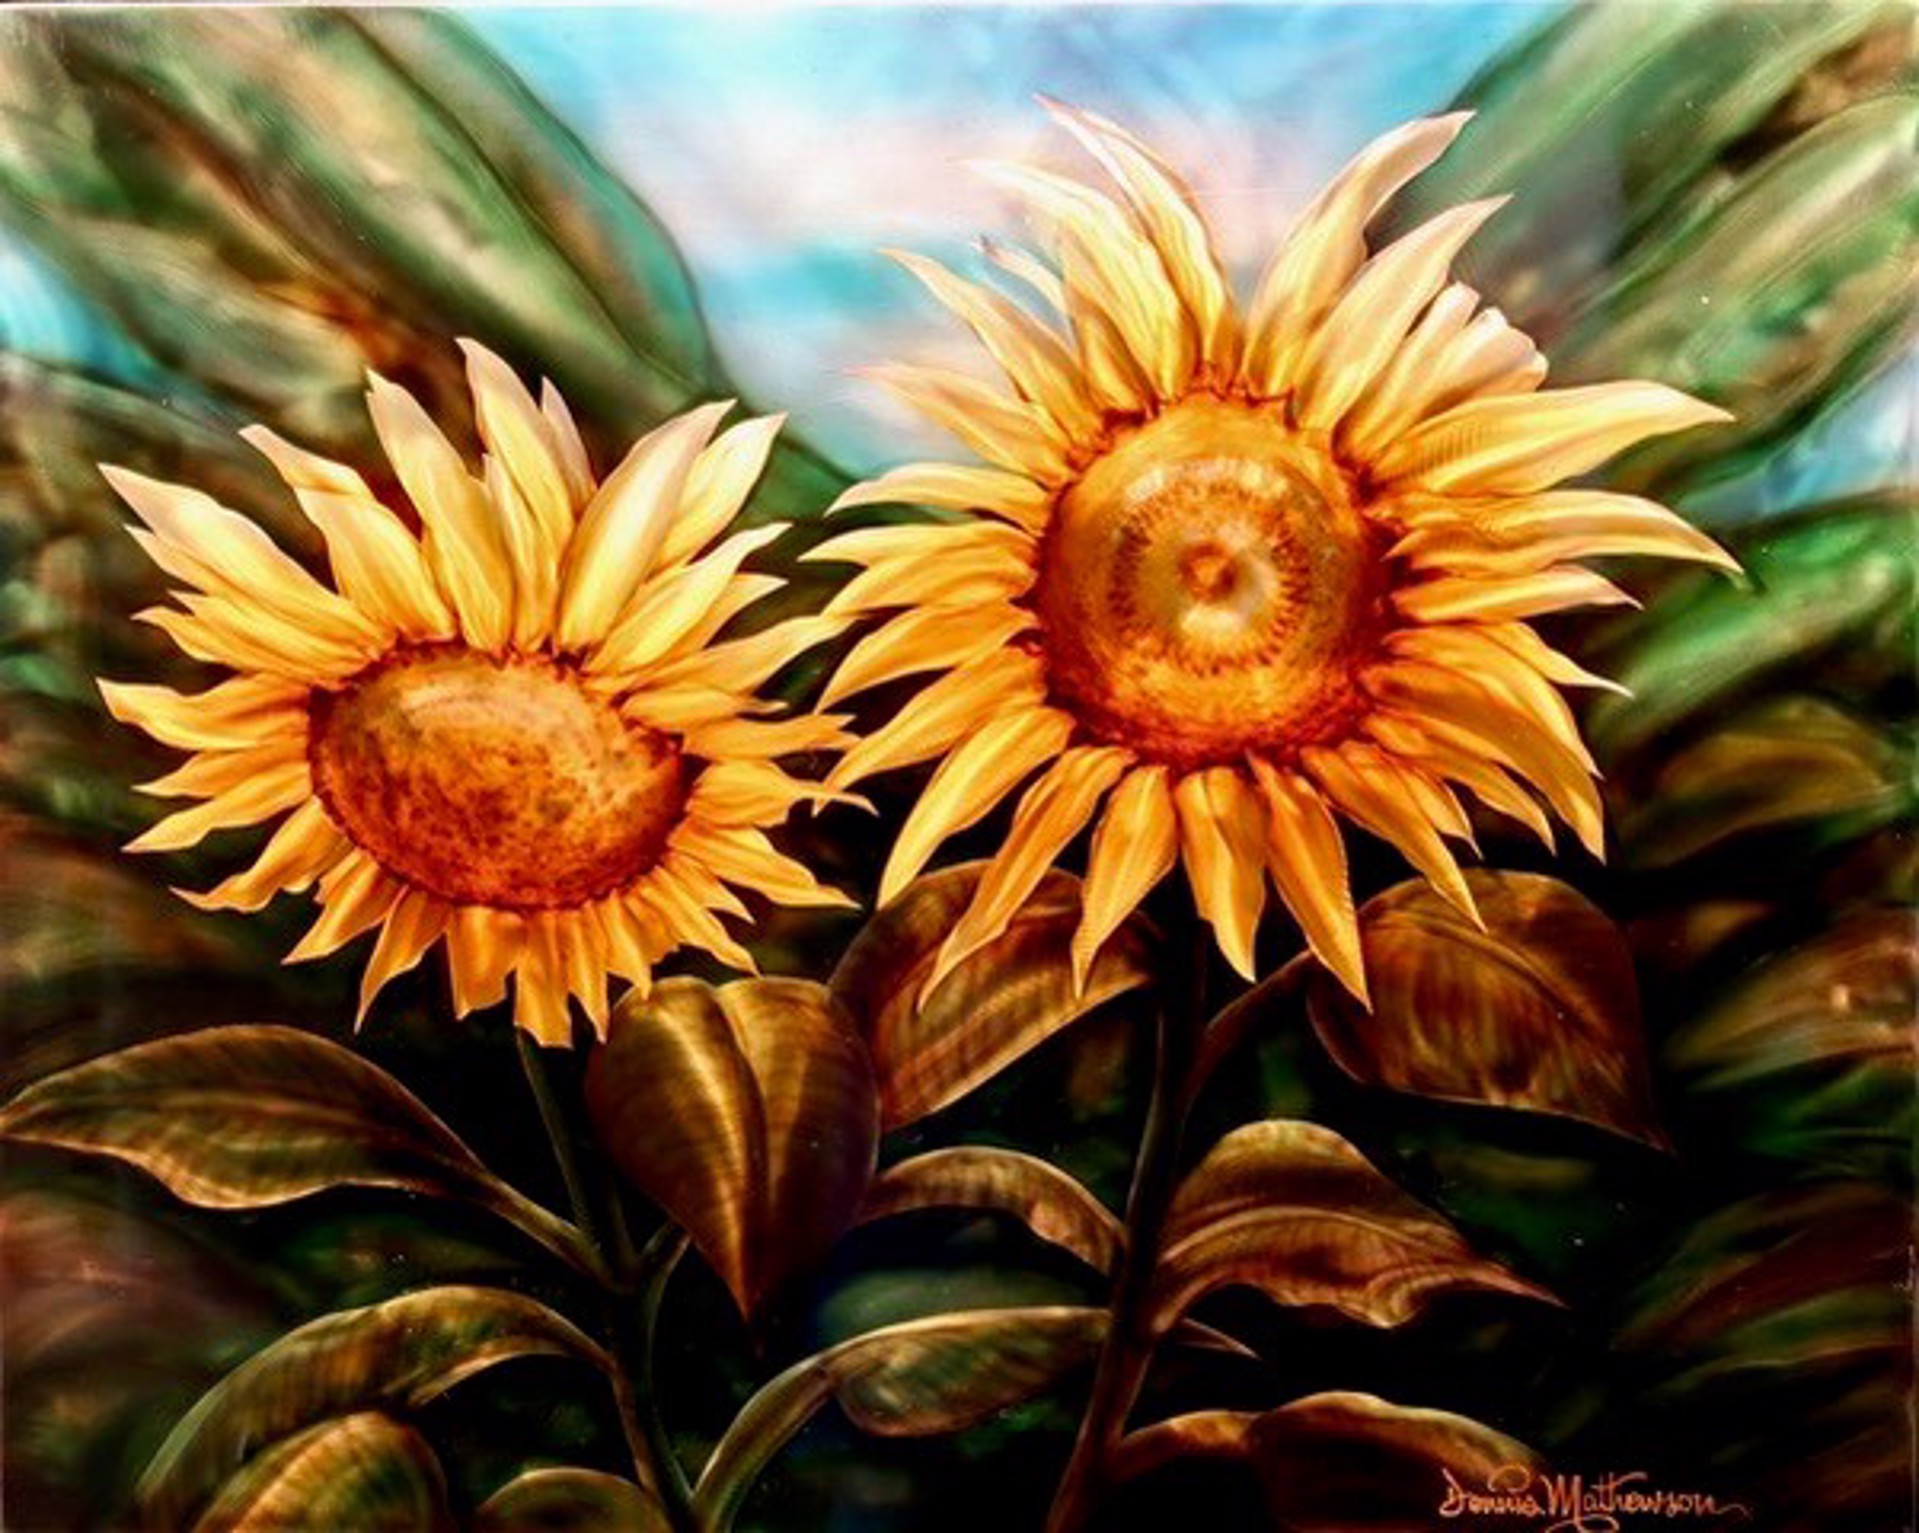 Sunflower Glory IM2736 by Dennis Mathewson